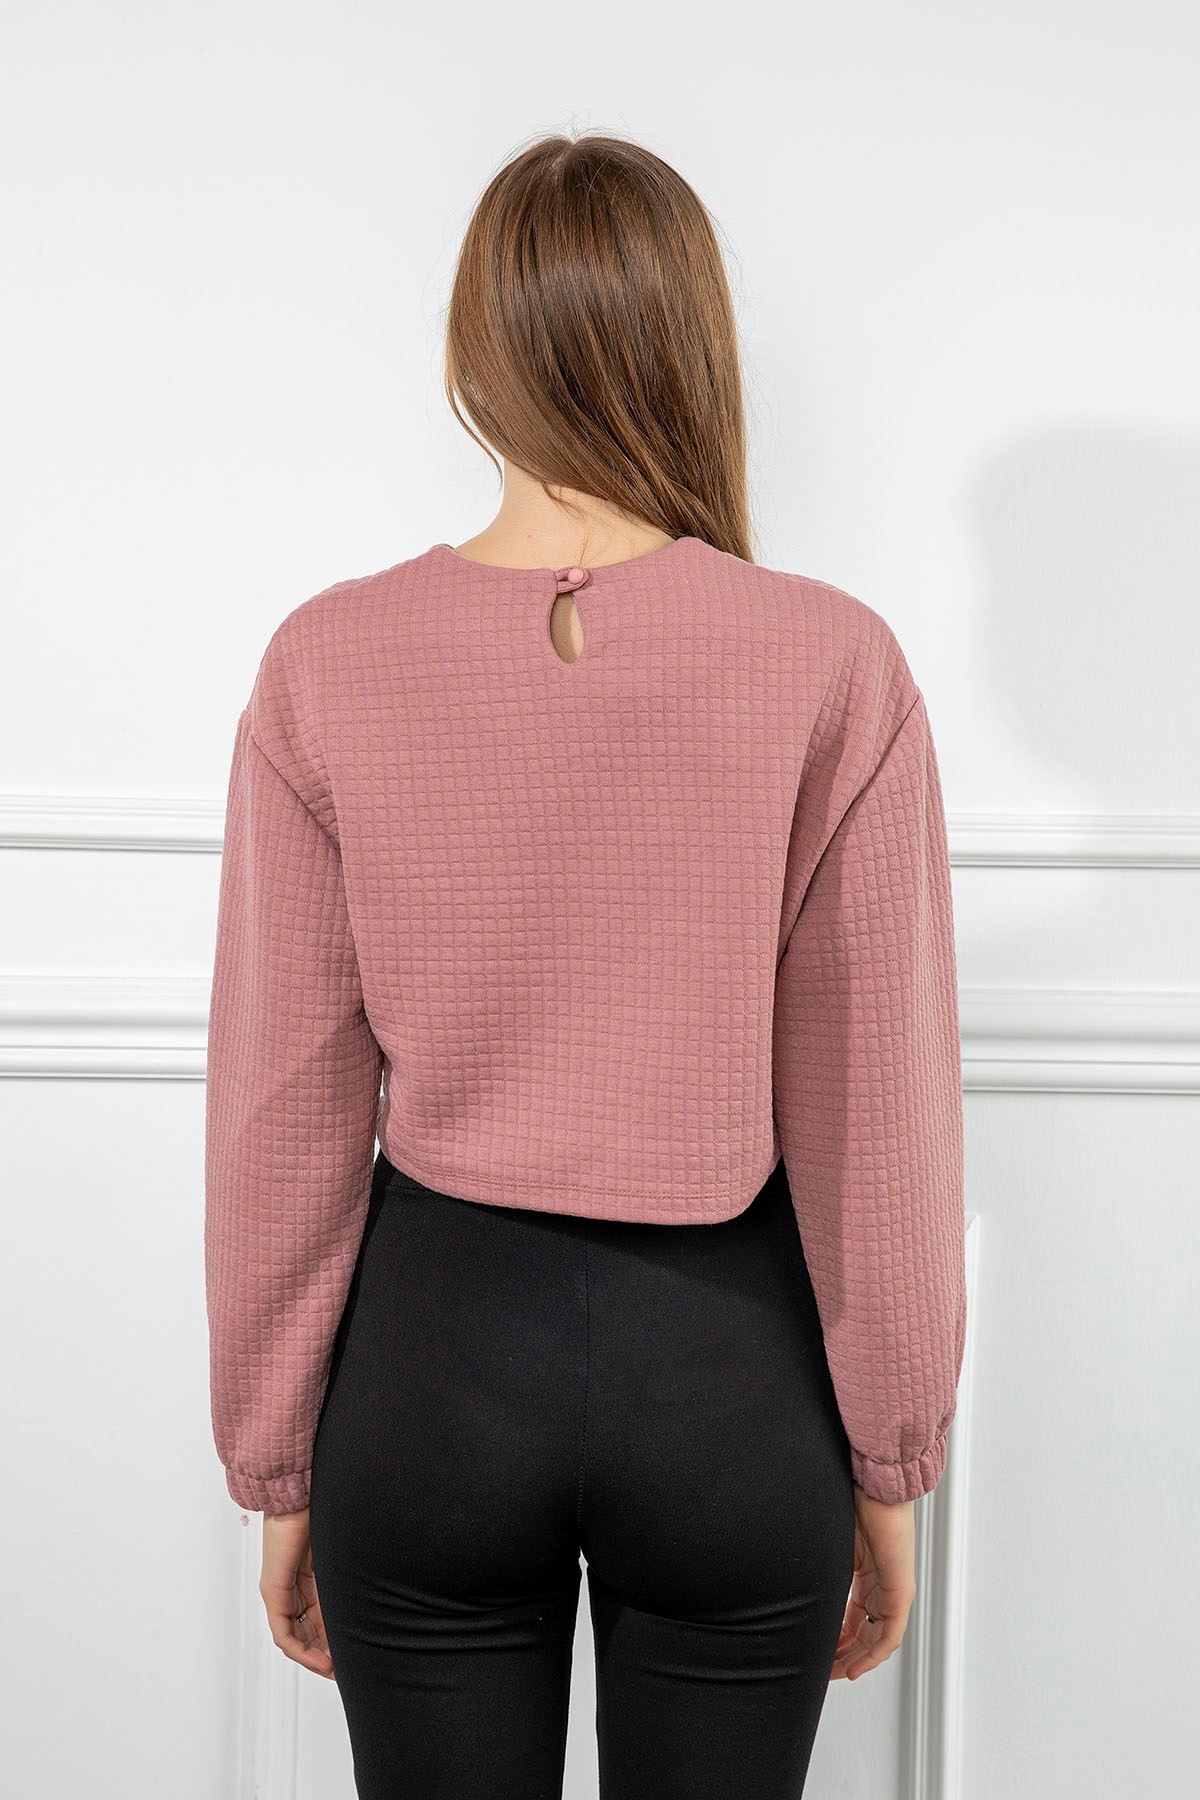 Honeycomb Fabric Long Sleeve Oversize Pocket Detailed Women Sweatshirt - Rose 